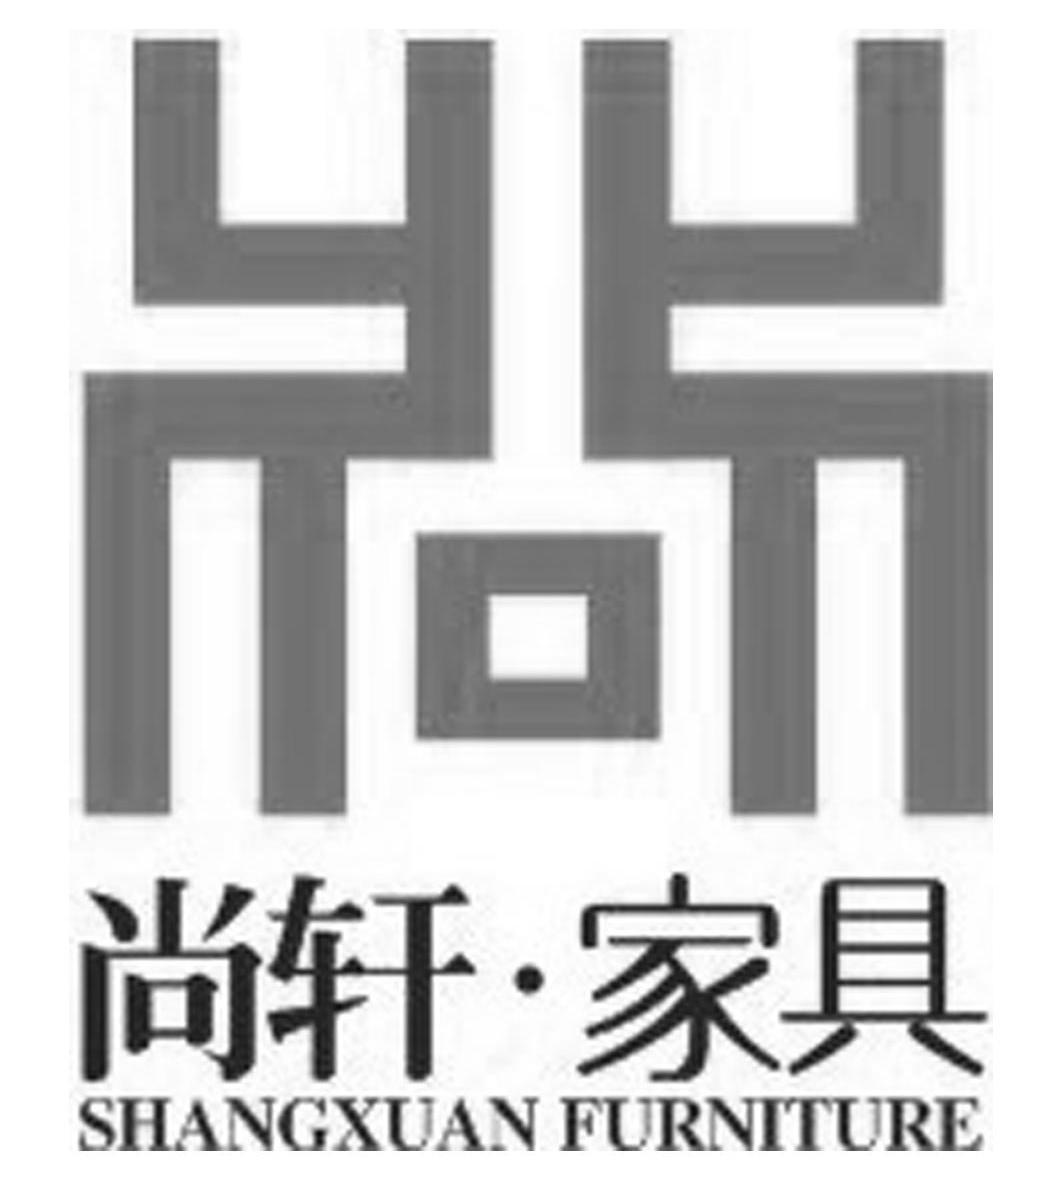  em>尚轩 /em>· em>家具 /em> shangxuan furniture